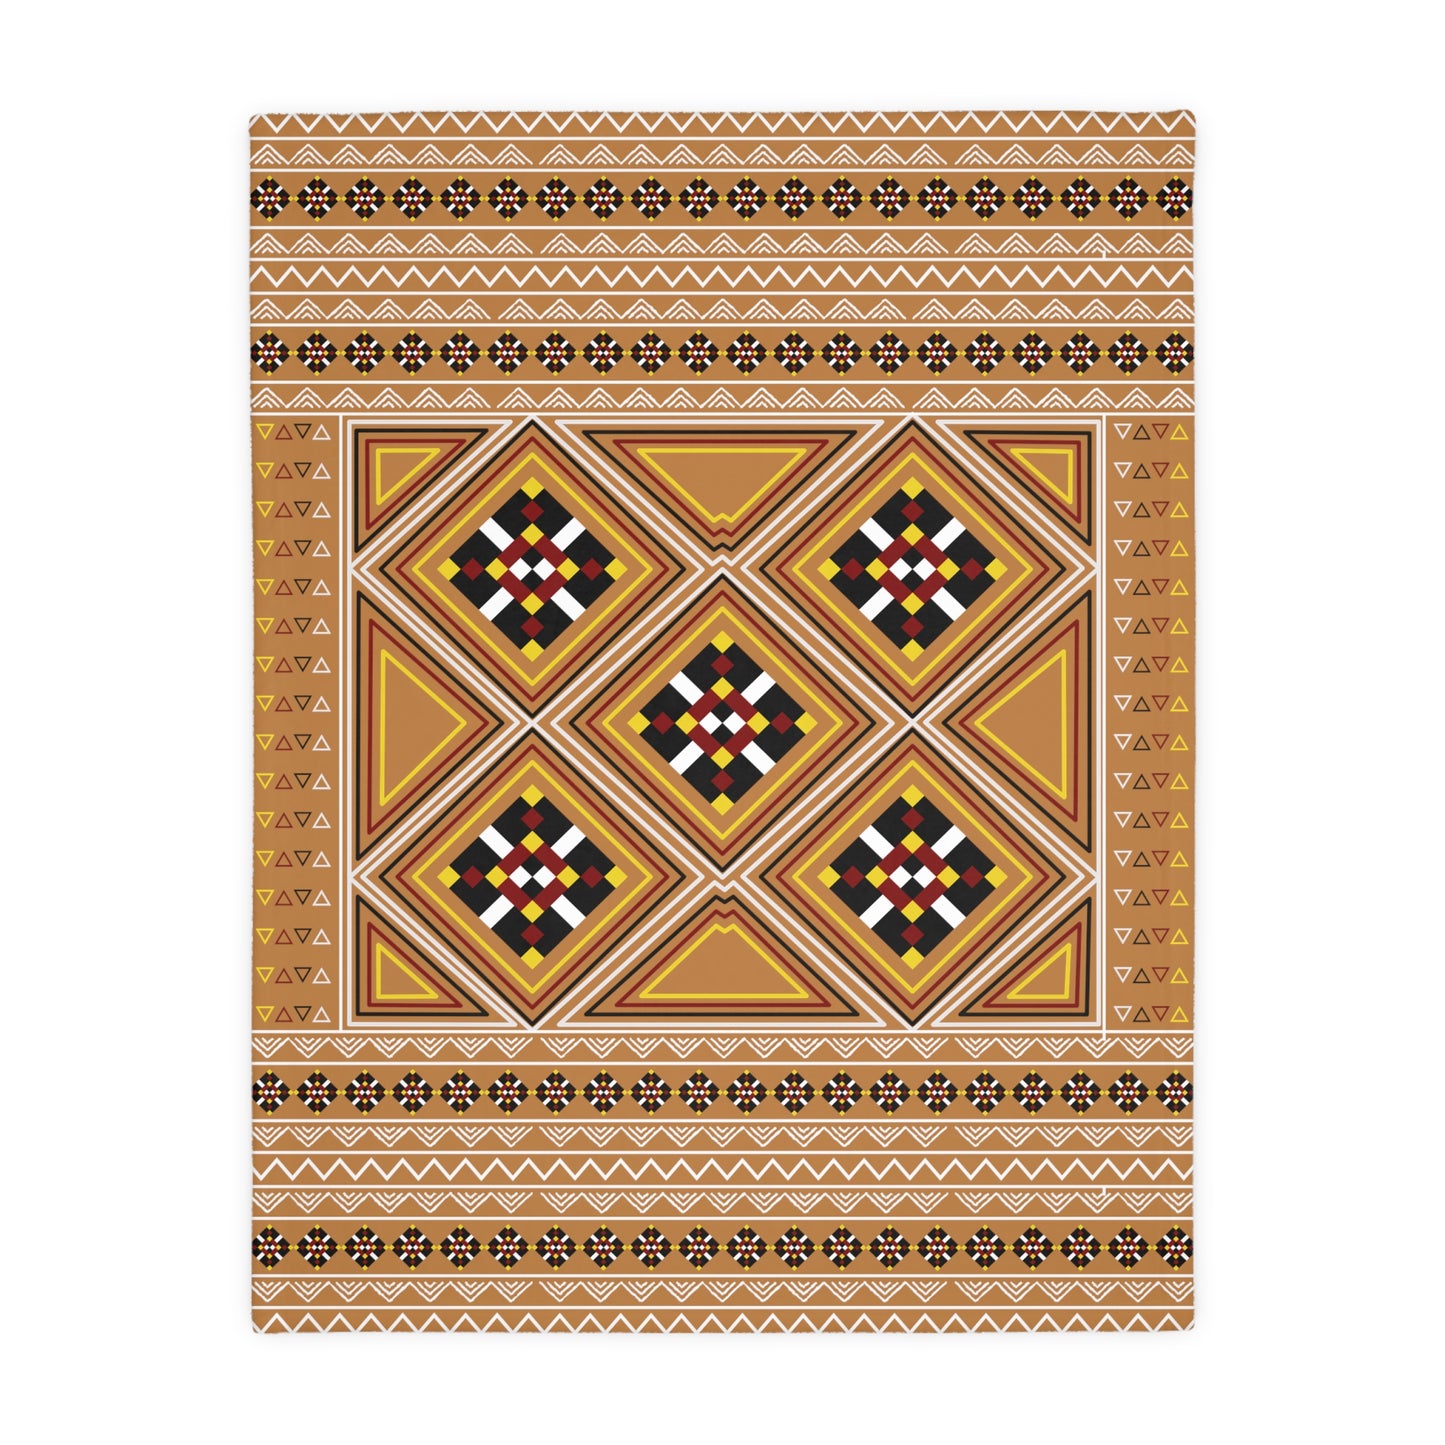 Light Brown Velveteen Microfiber Blanket (Two-sided print)